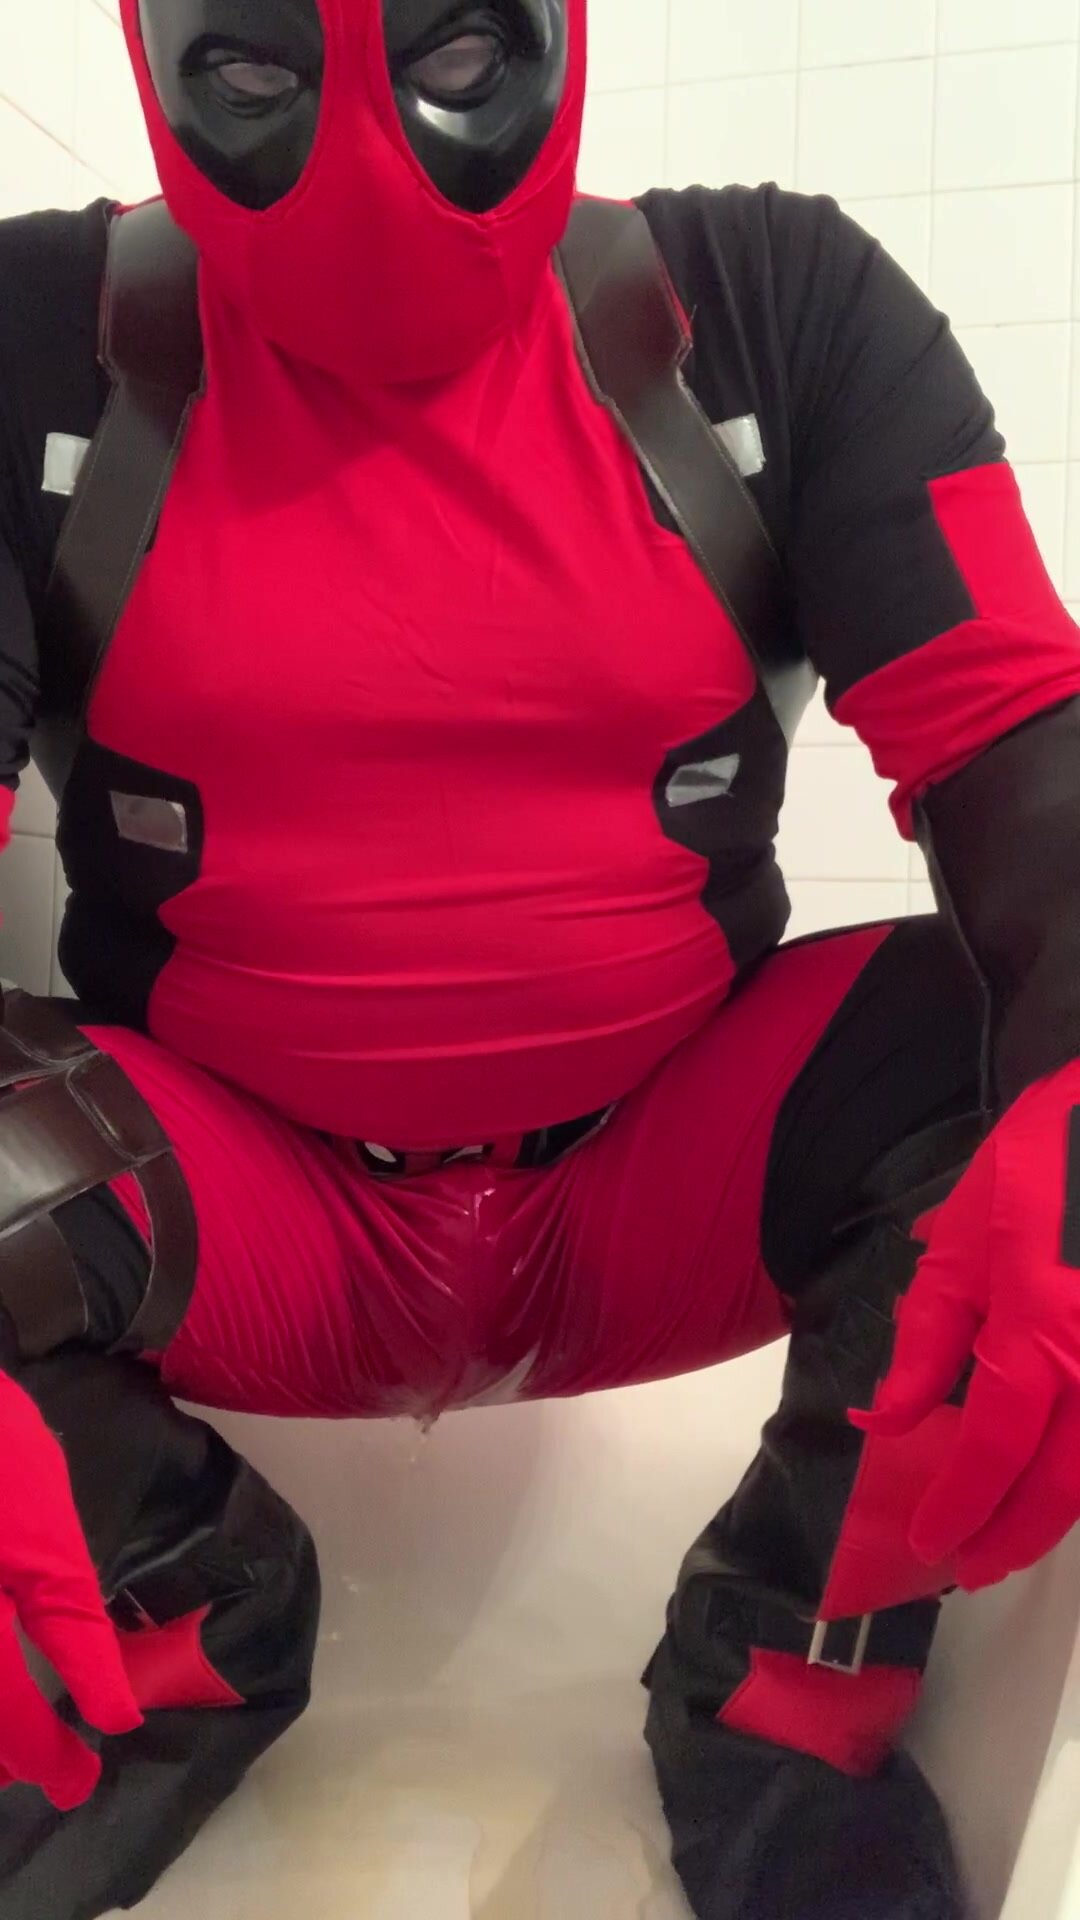 squat piss in deadpool costume